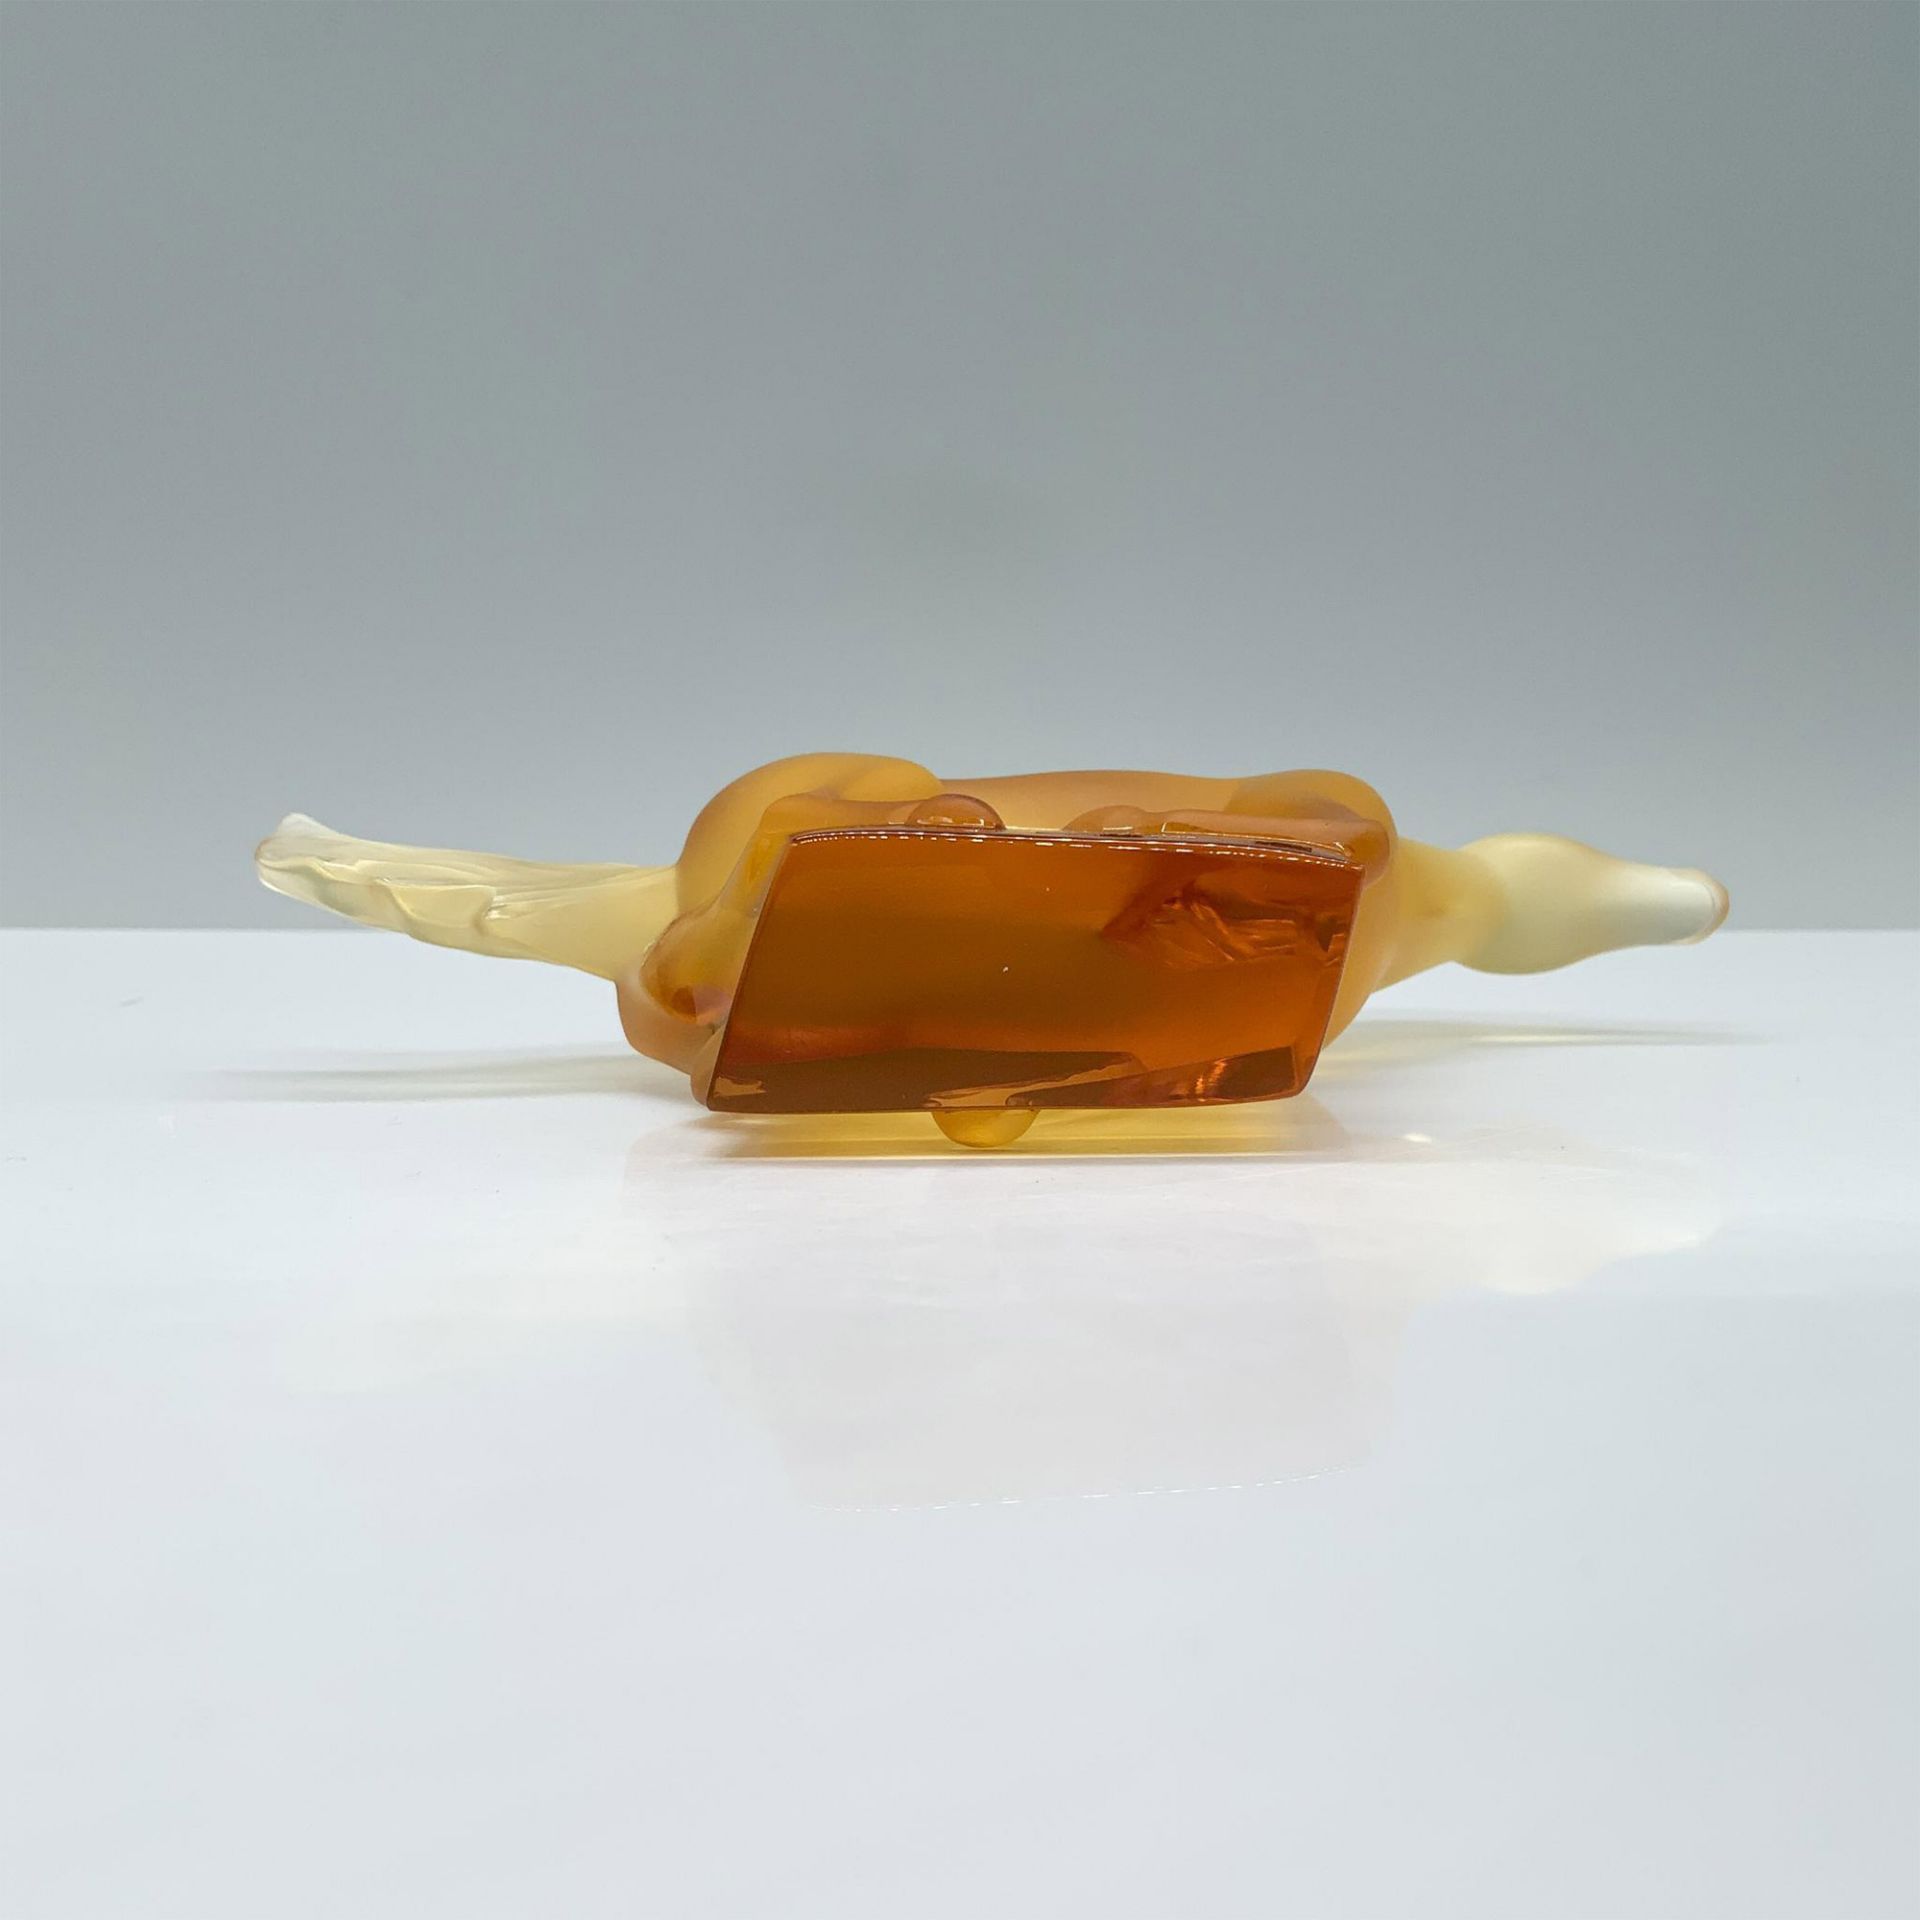 Lalique Crystal Figurine, Amber Kazak Horse - Image 3 of 3